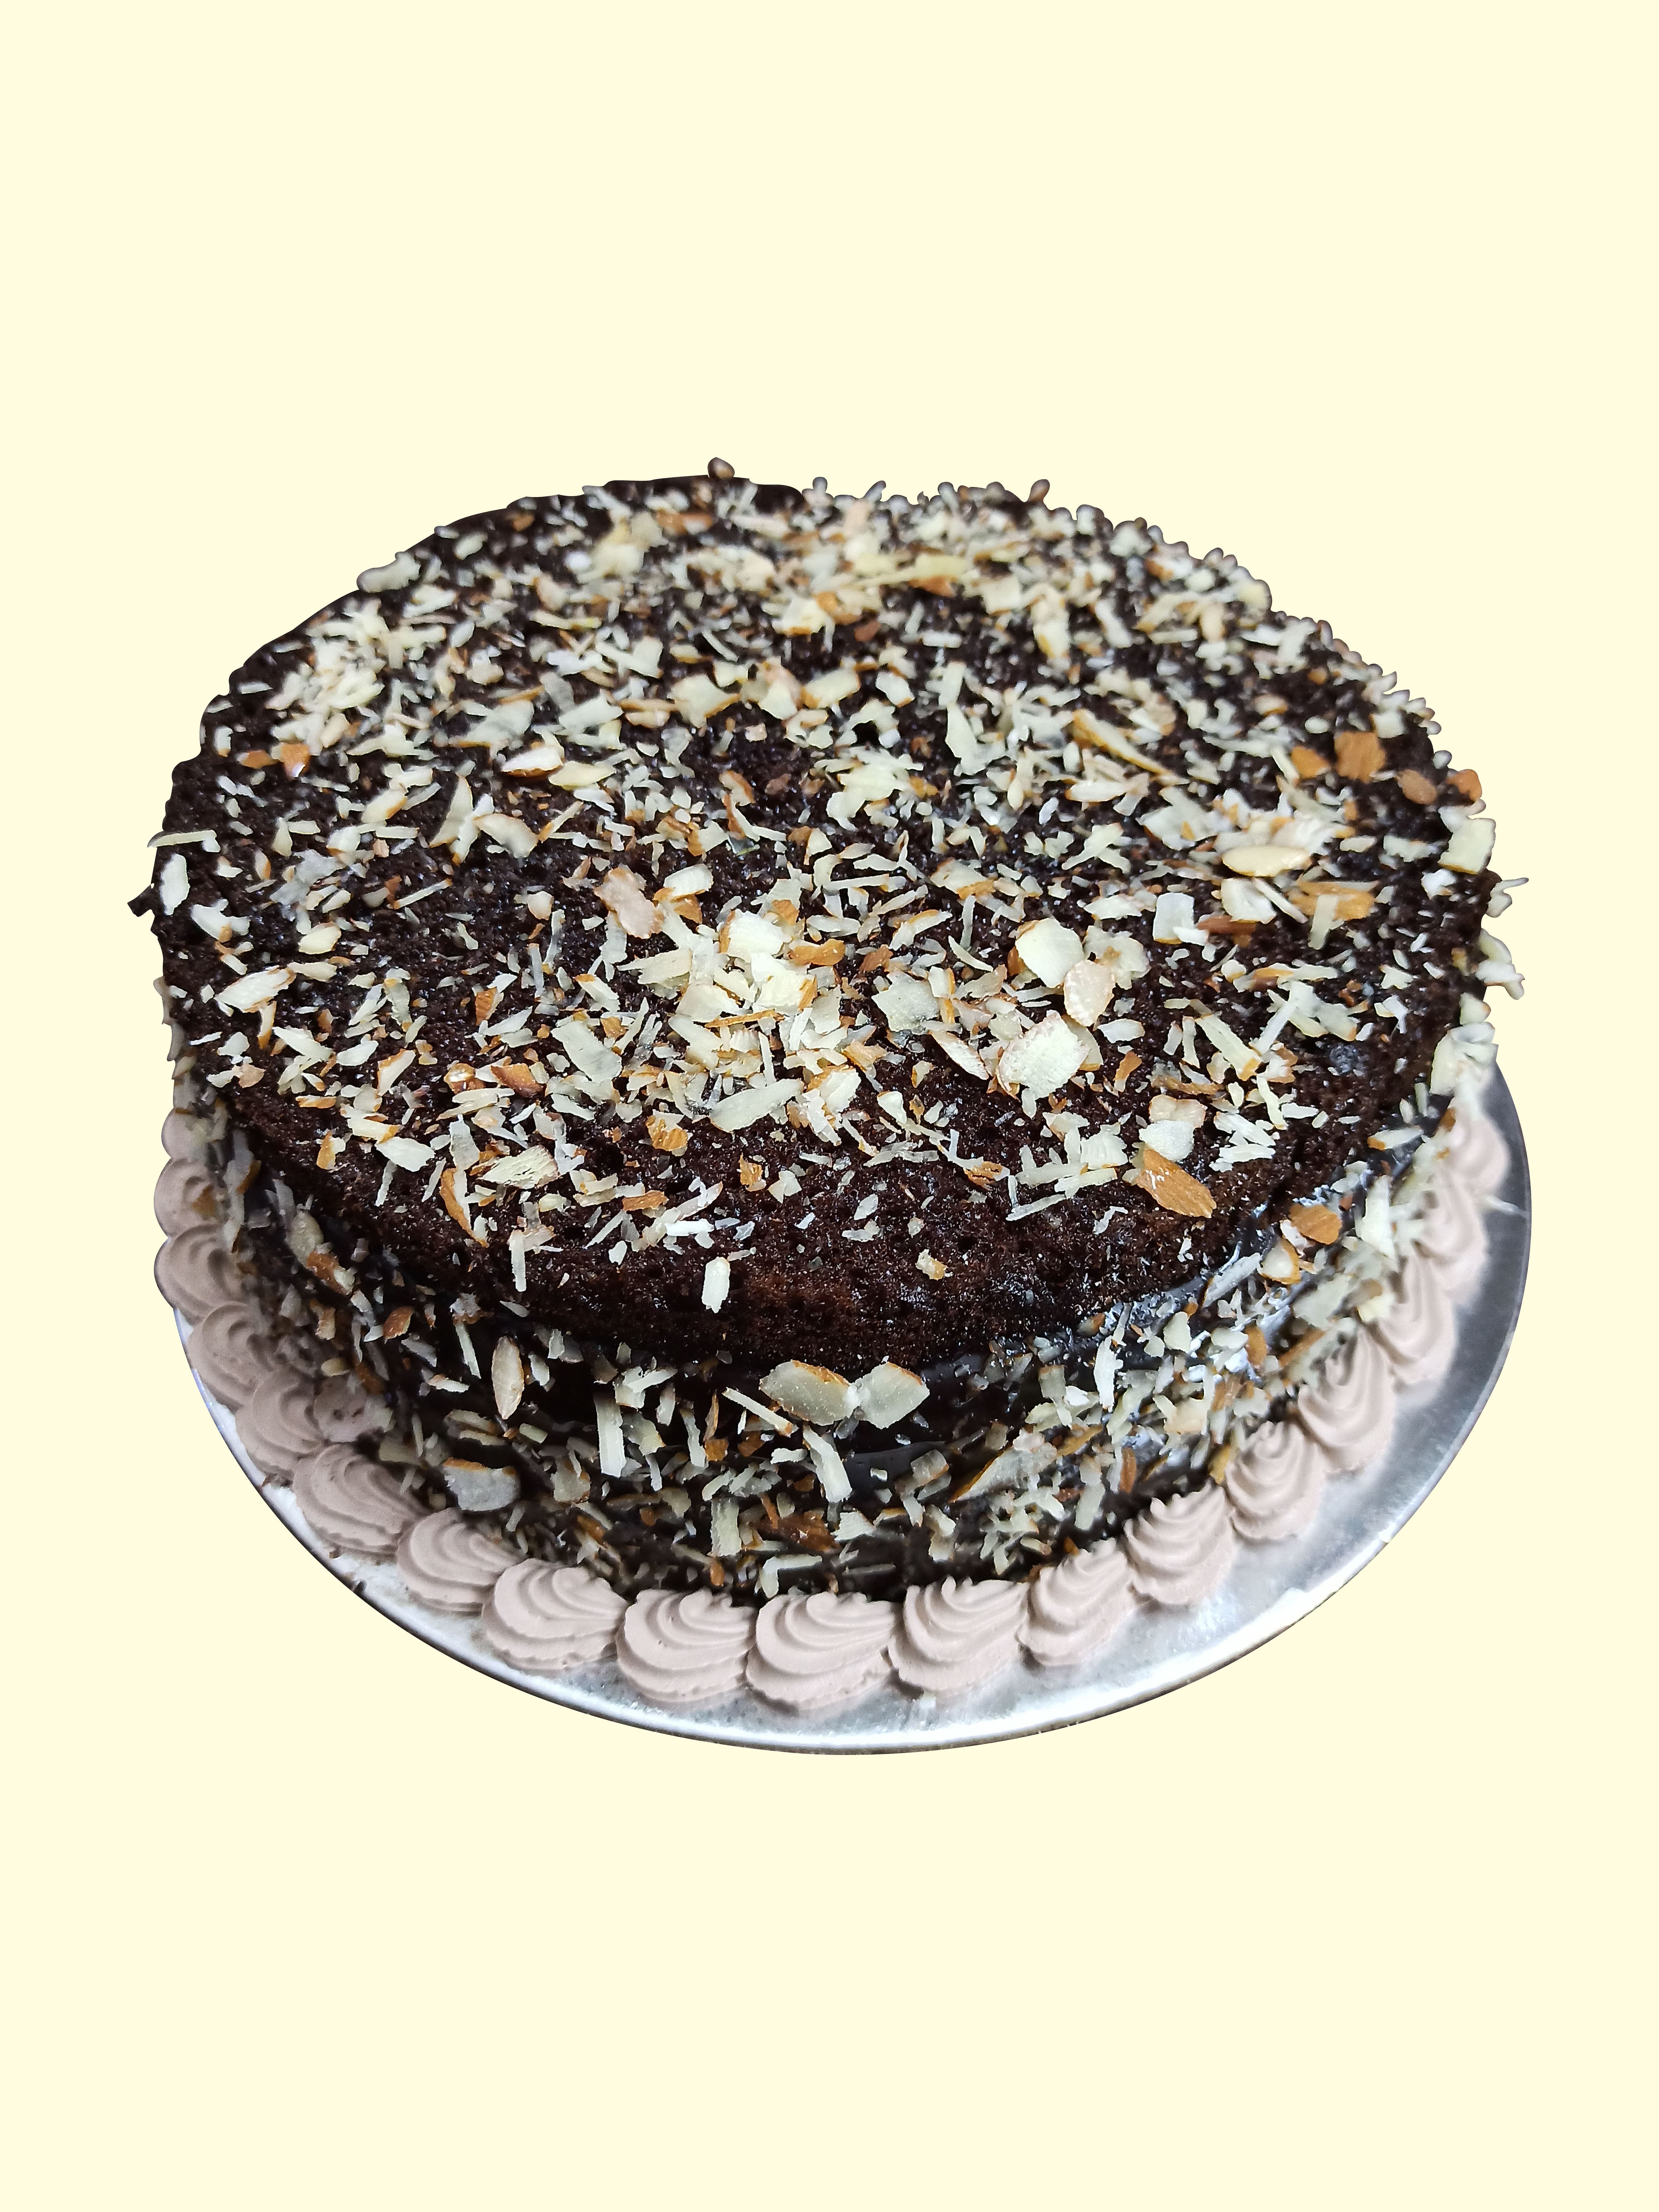 Share 120+ cake world bakery latest - kidsdream.edu.vn